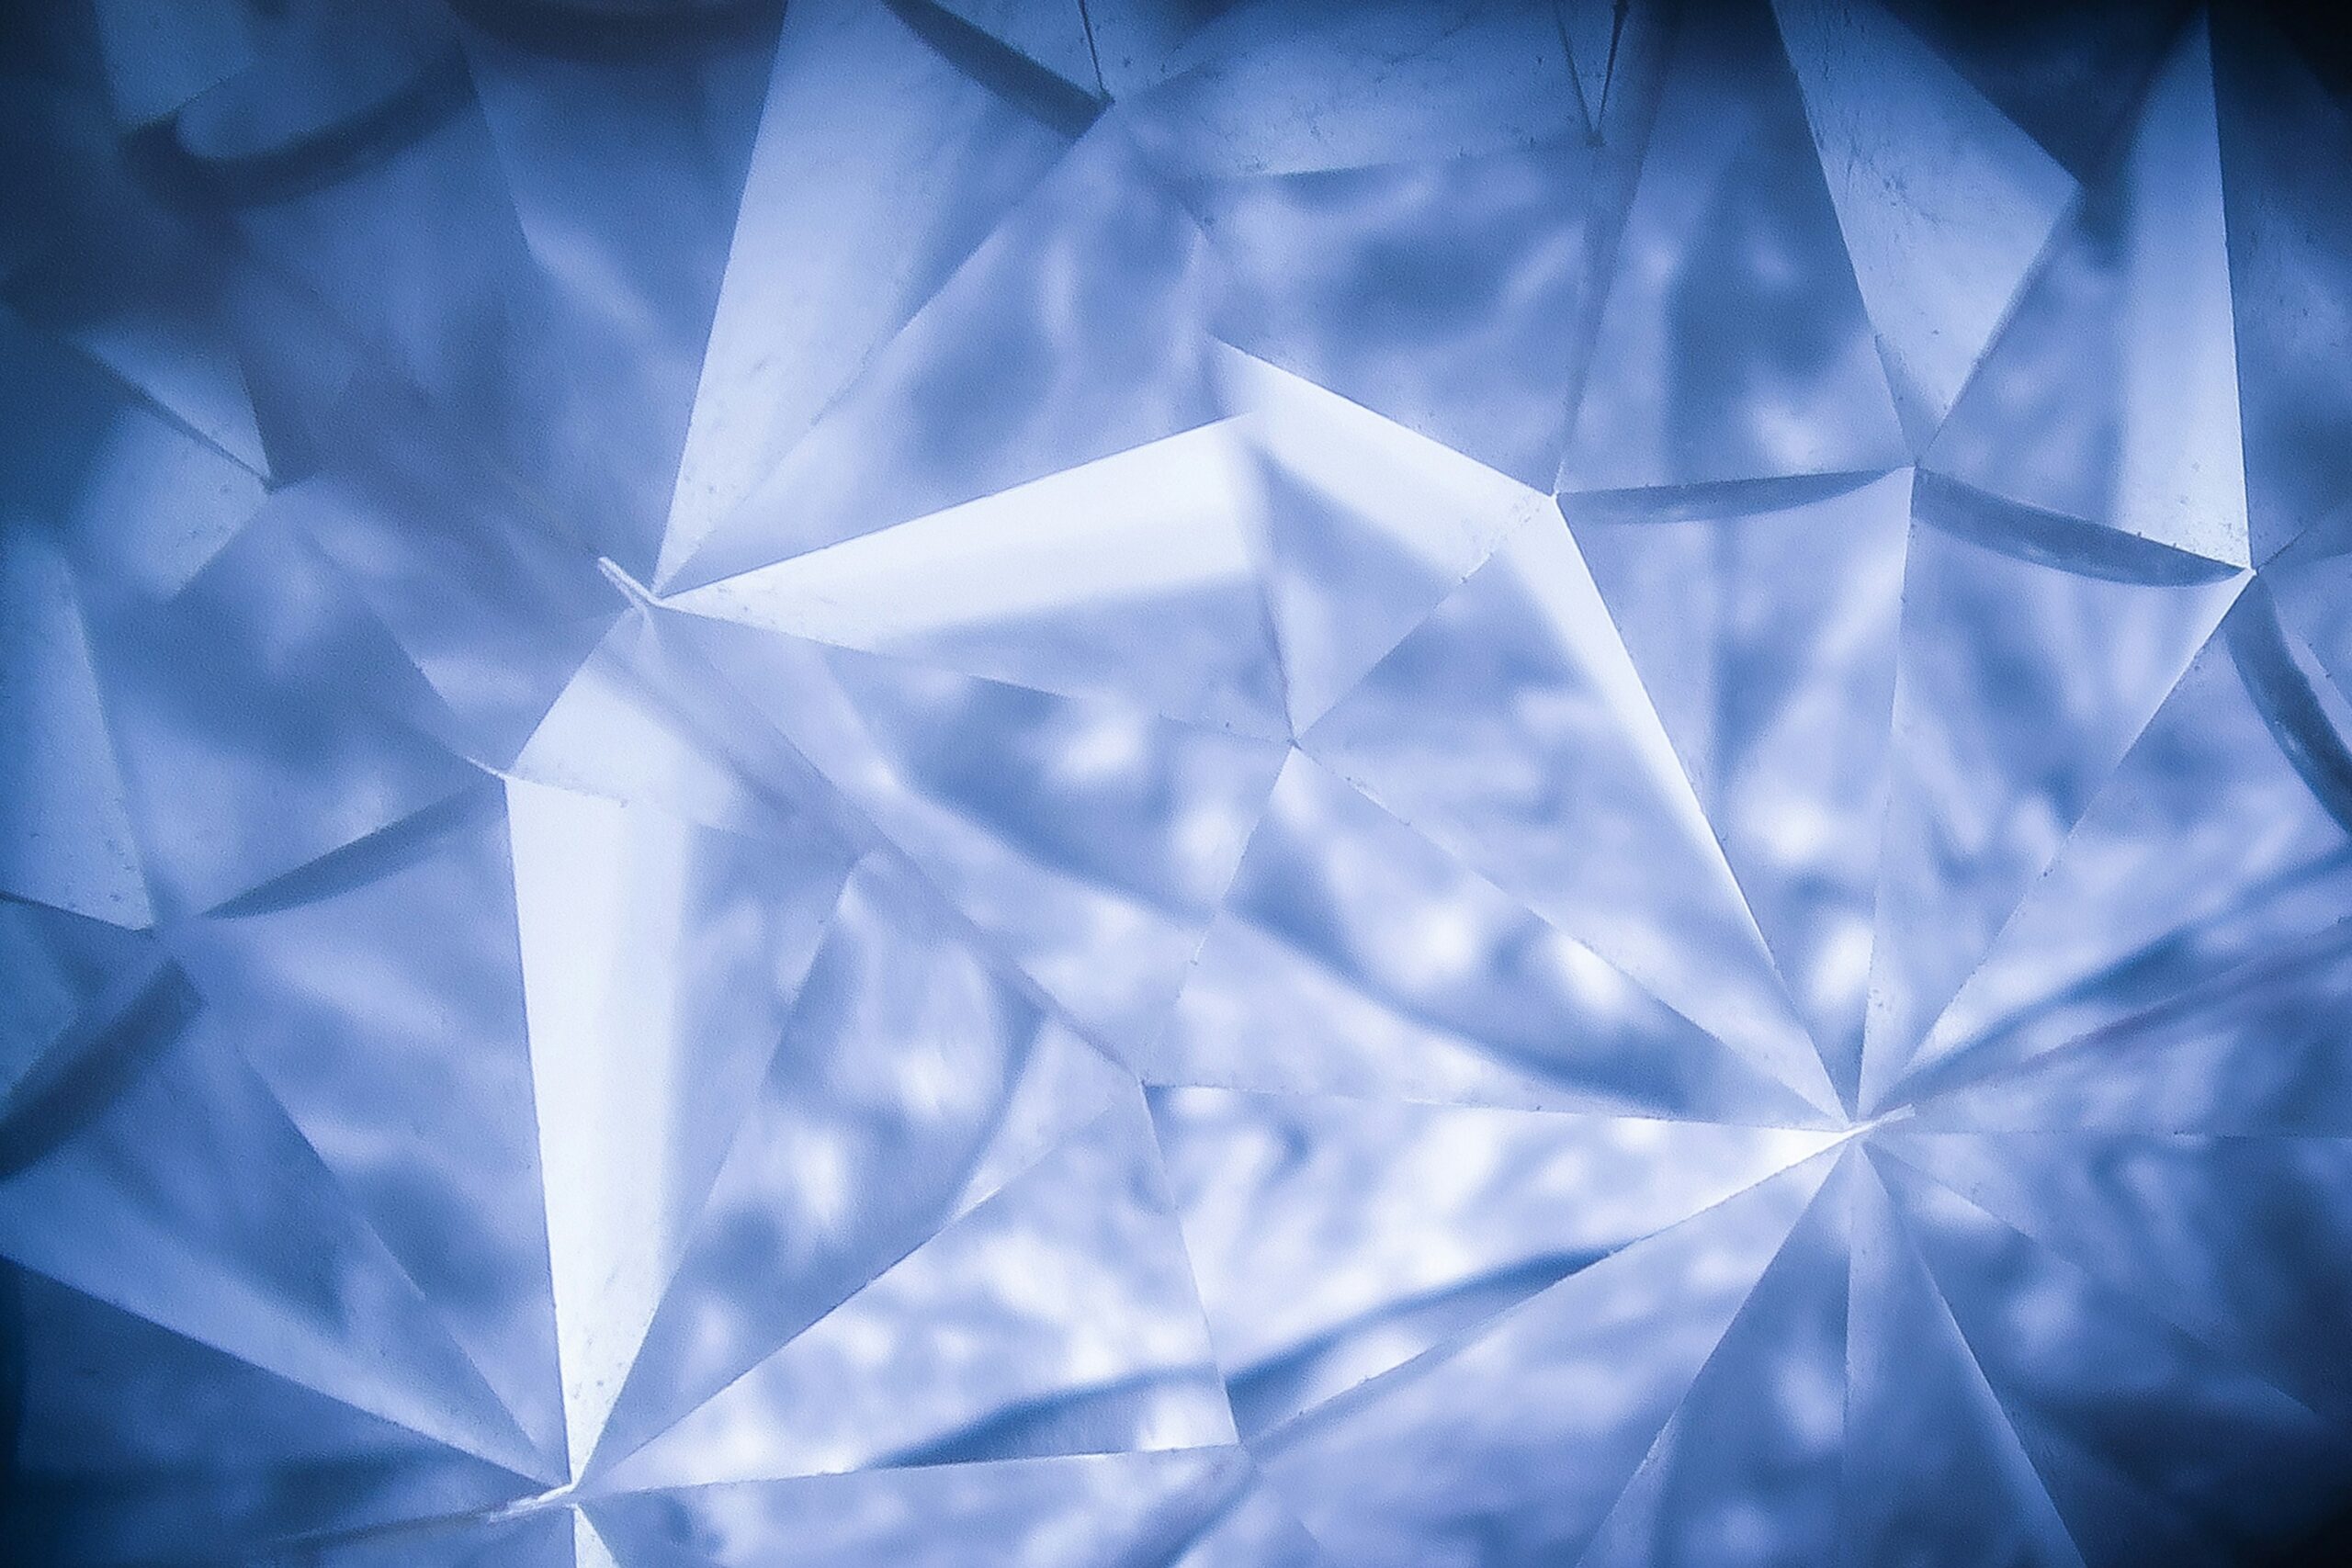 De waarde van een diamantverkoop zonder certificaat